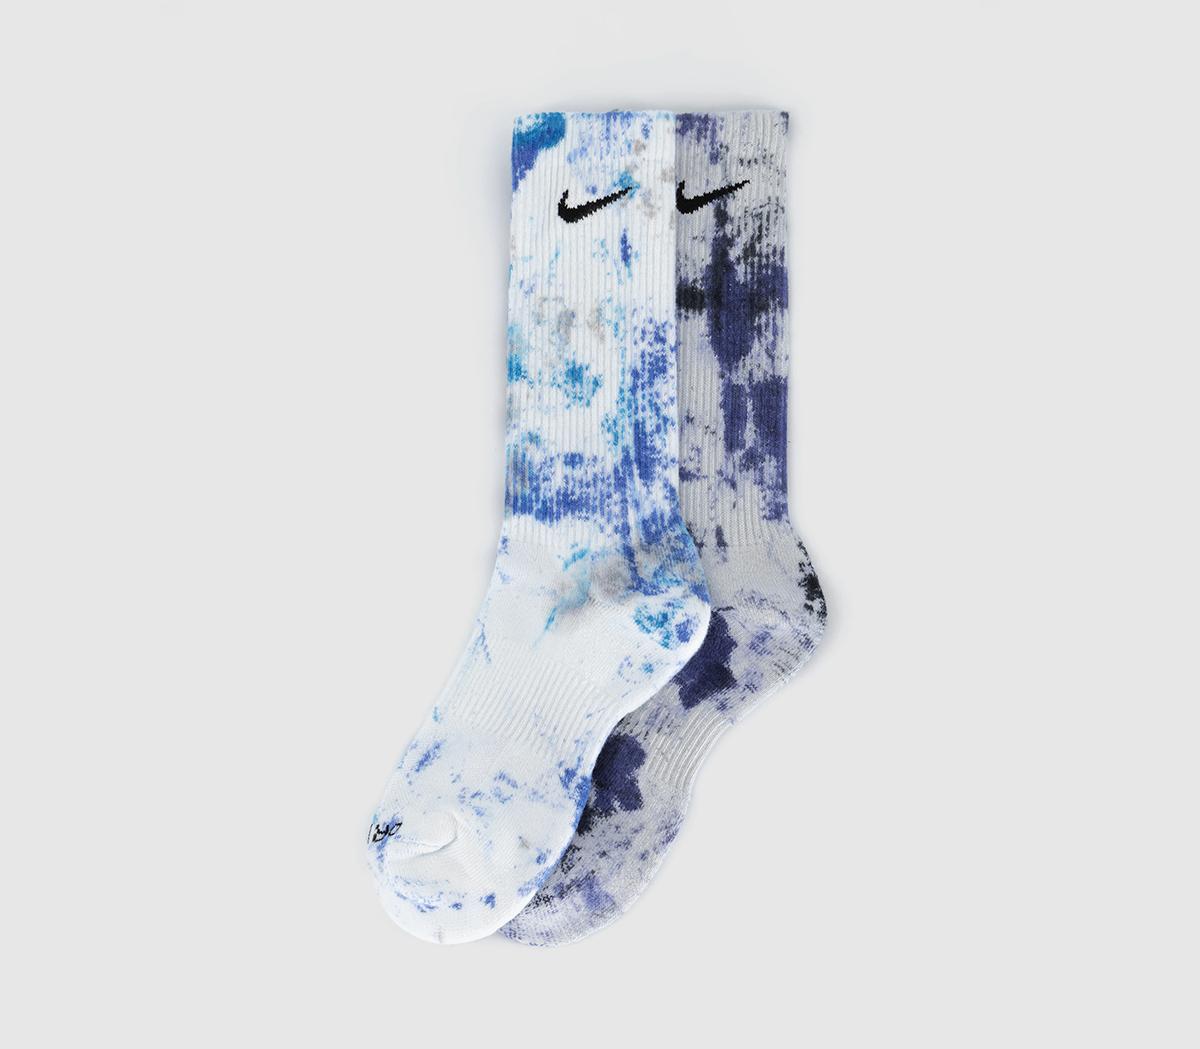 NikeCushioned Tie Dye Crew Socks 2 PairsBlue Navy Tie Dye